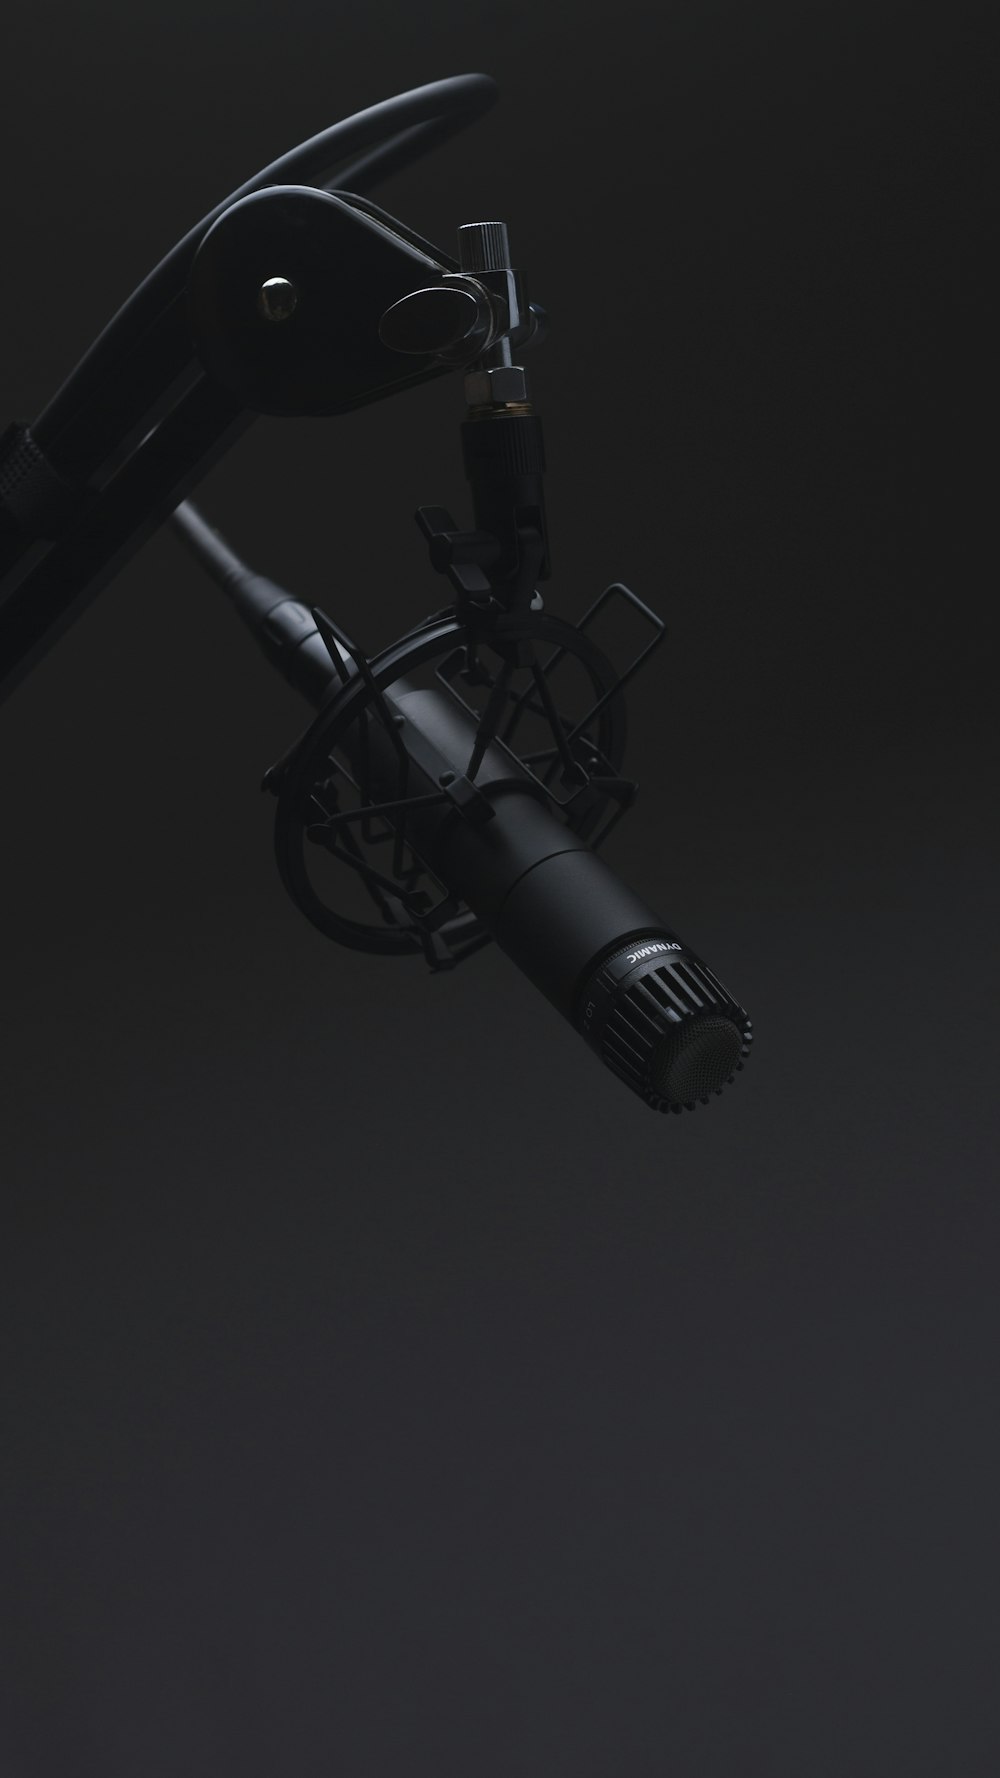 Microphone noir dans une pièce tamisée